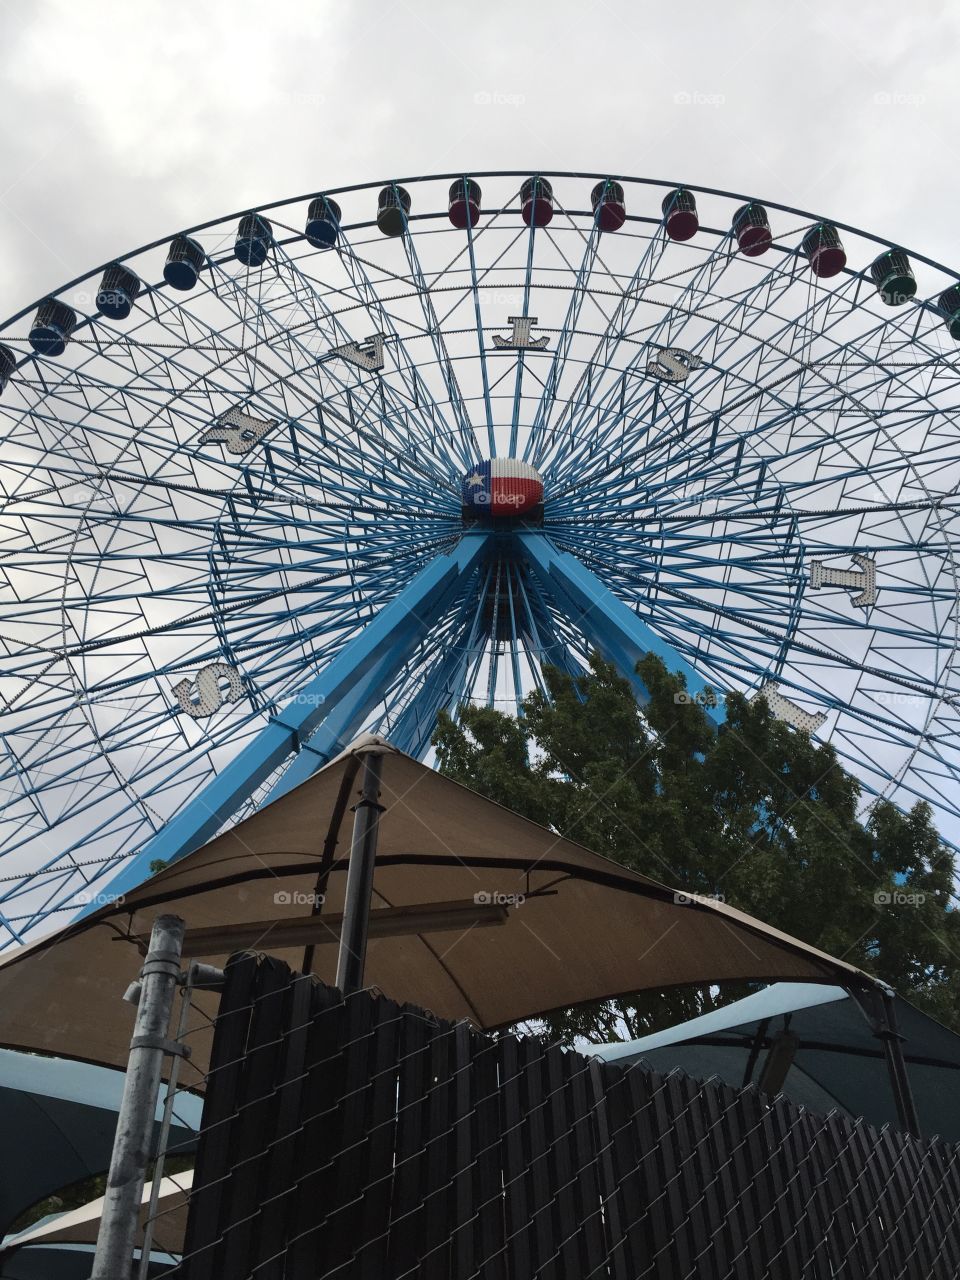 Texas Star Ferris wheel at State Fair of Texas in Dallas